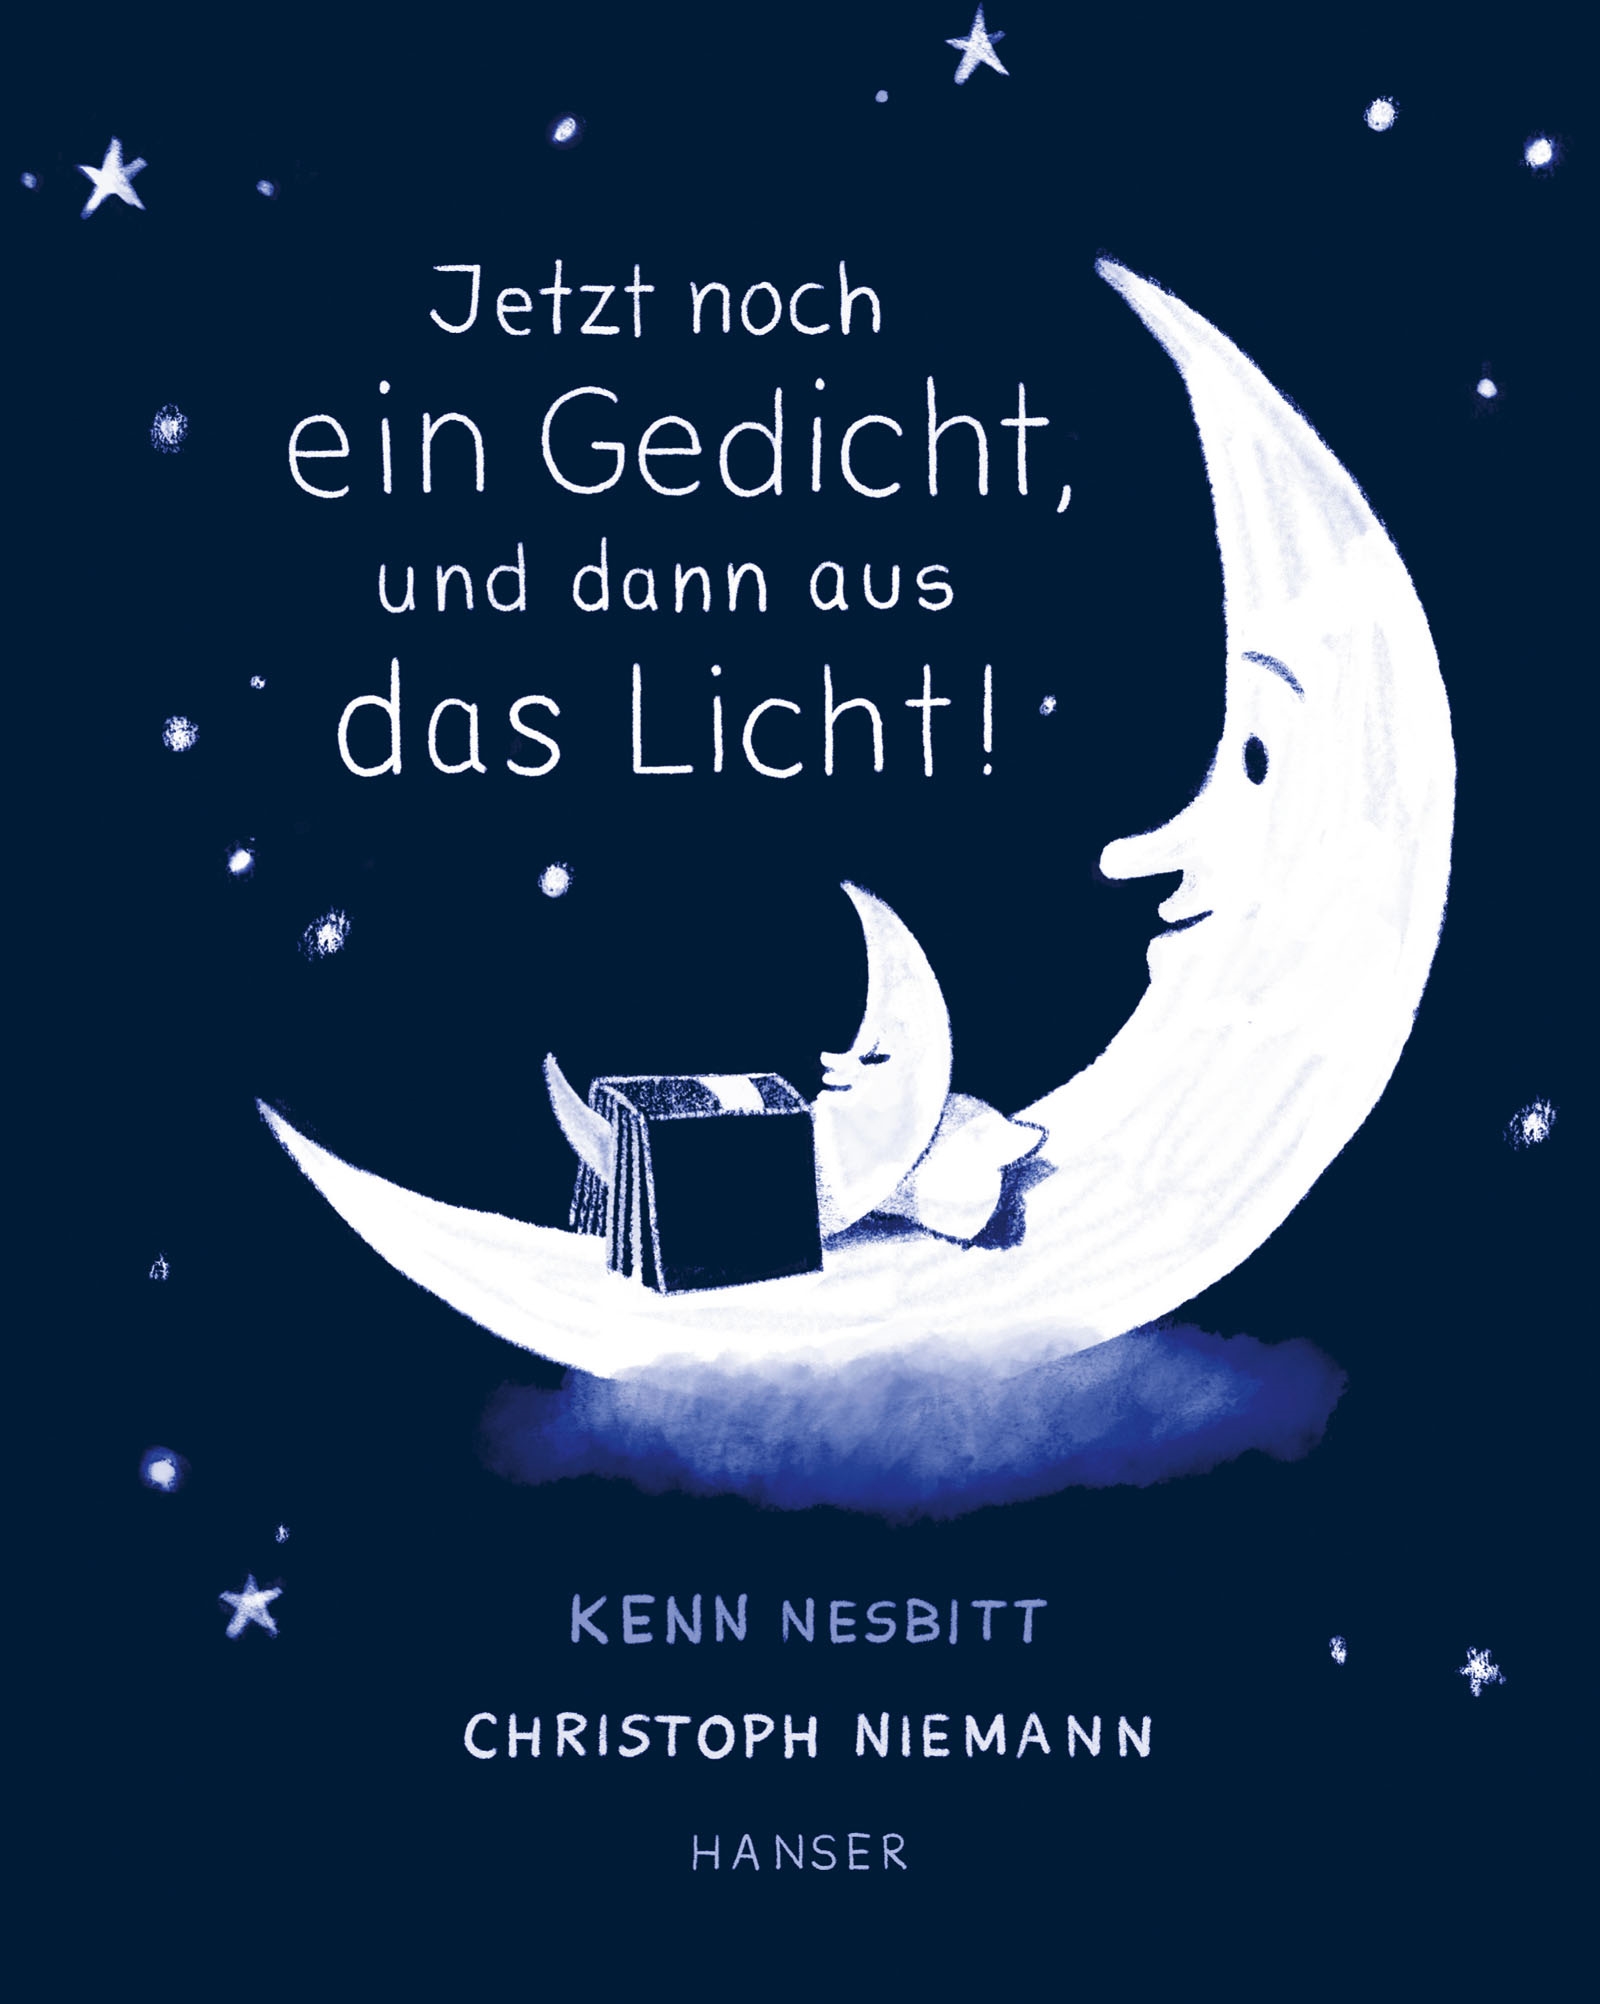 Jetzt noch ein Gedicht, und dann aus das Licht! von Ken Nesbit Parkbuchhandlung Buchhandlung Bonn Bad Godesberg